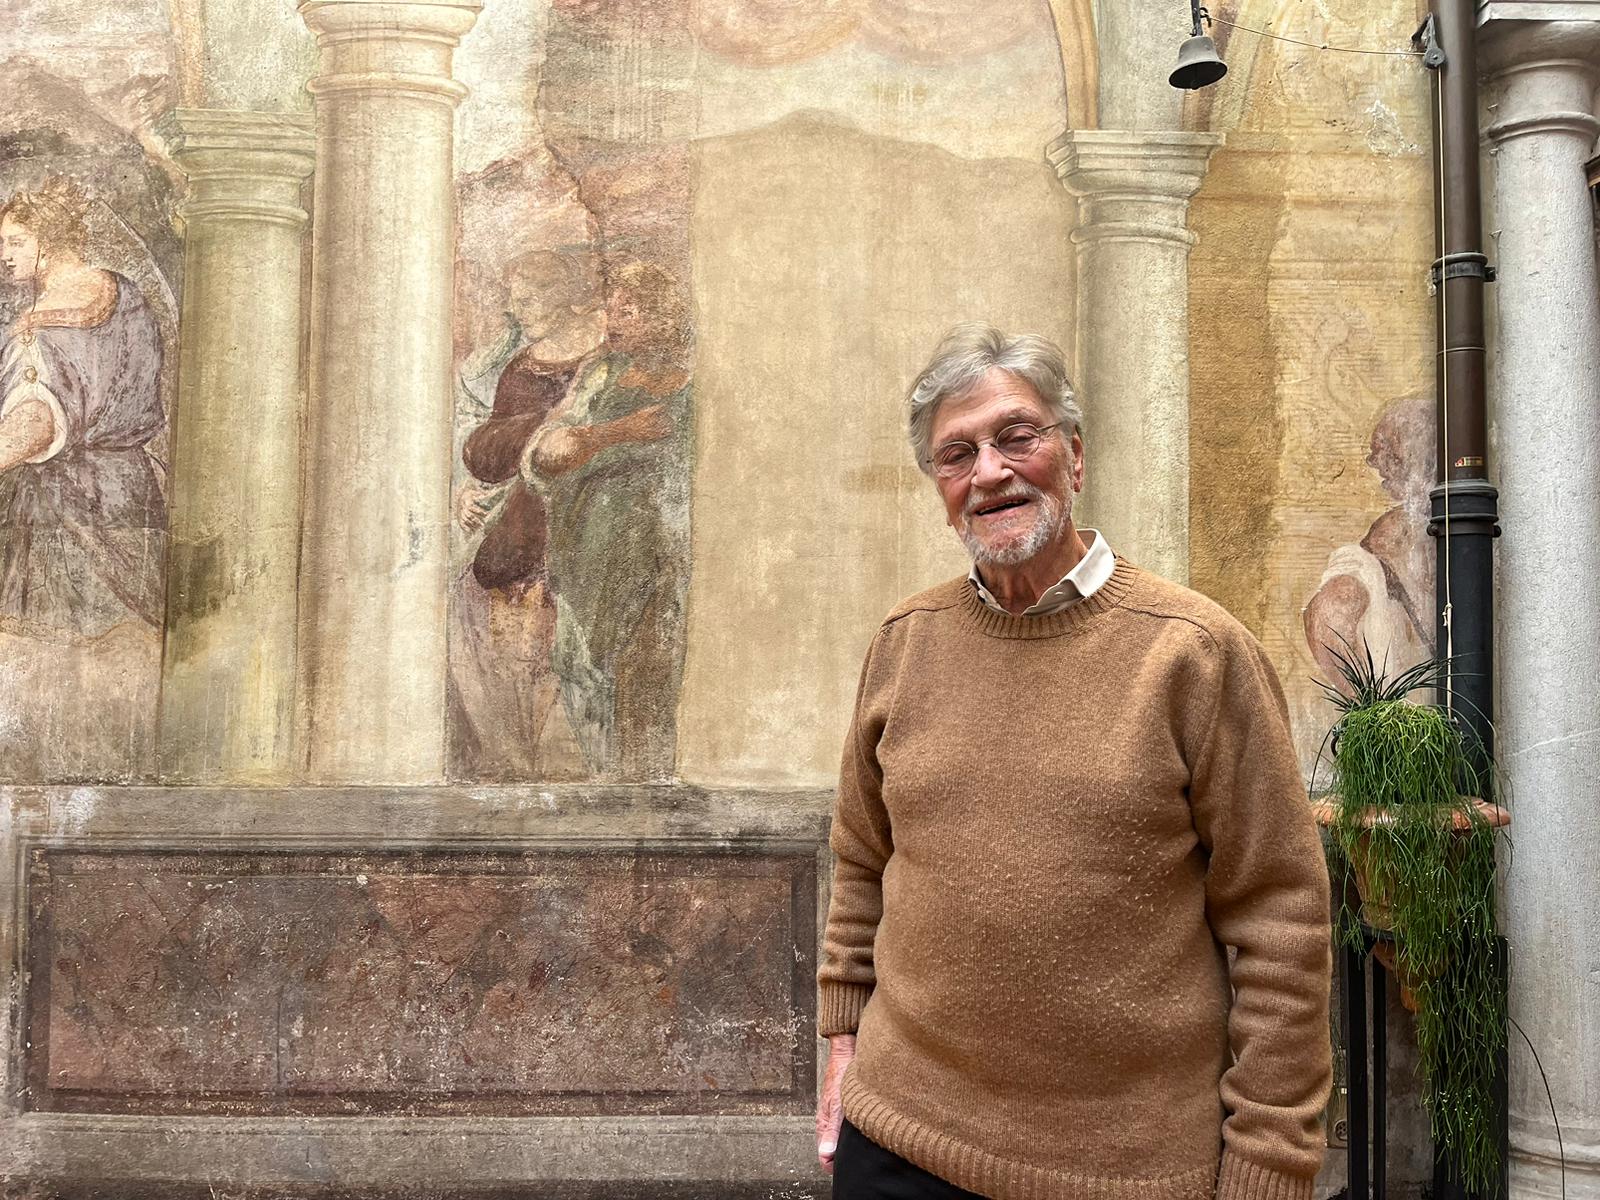 Il maestro Vincenzo Giudici in visita al Centro pastorale S. Giuseppe di Lugano durante l'intervista (foto catt.ch.)